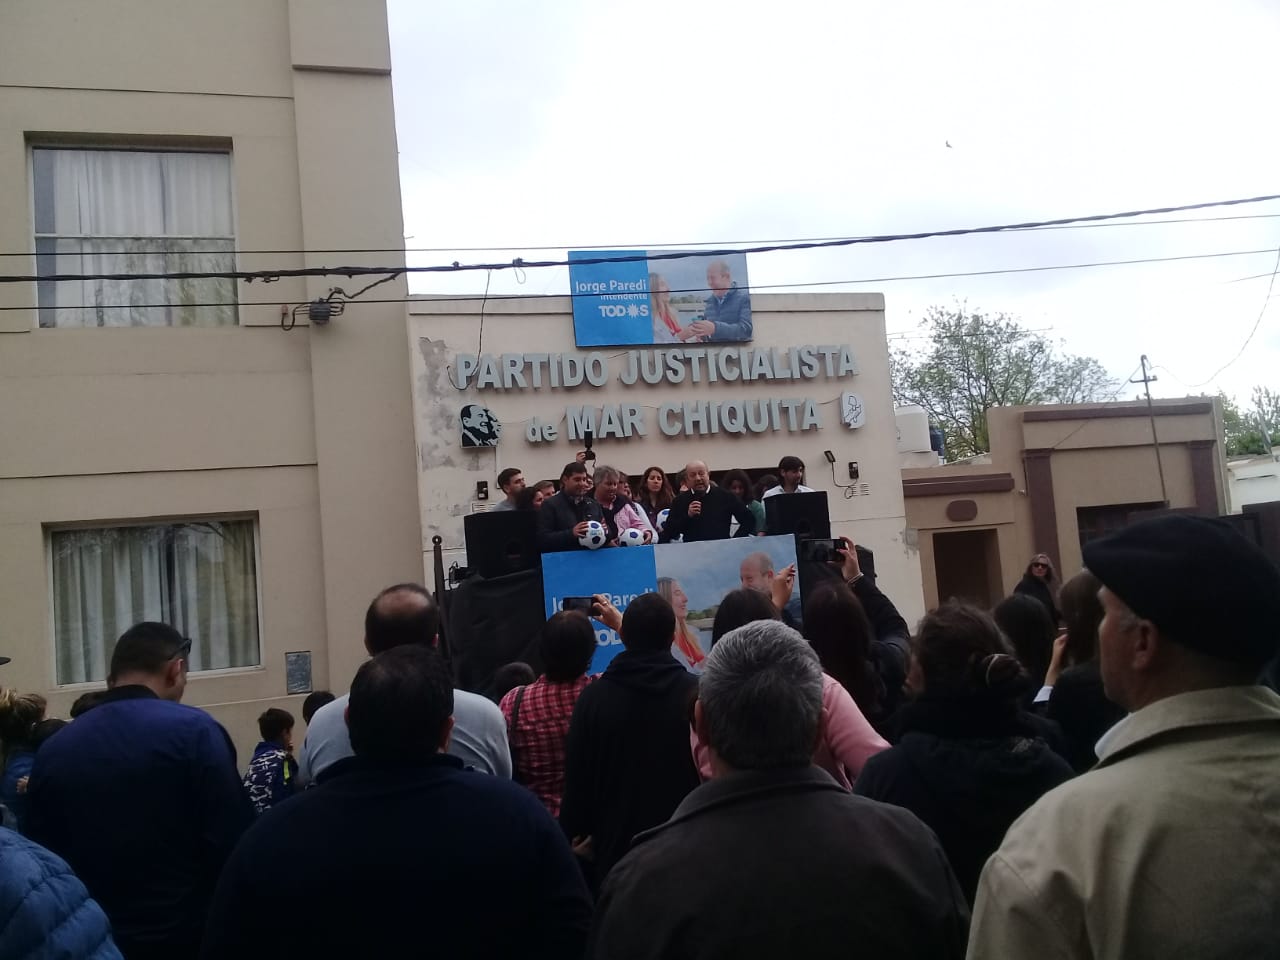 CAMINO A LAS ELECCIONES: Paredi cerró su campaña en el mediterráneo y apuesta fuerte a la costa para el próximo sábado